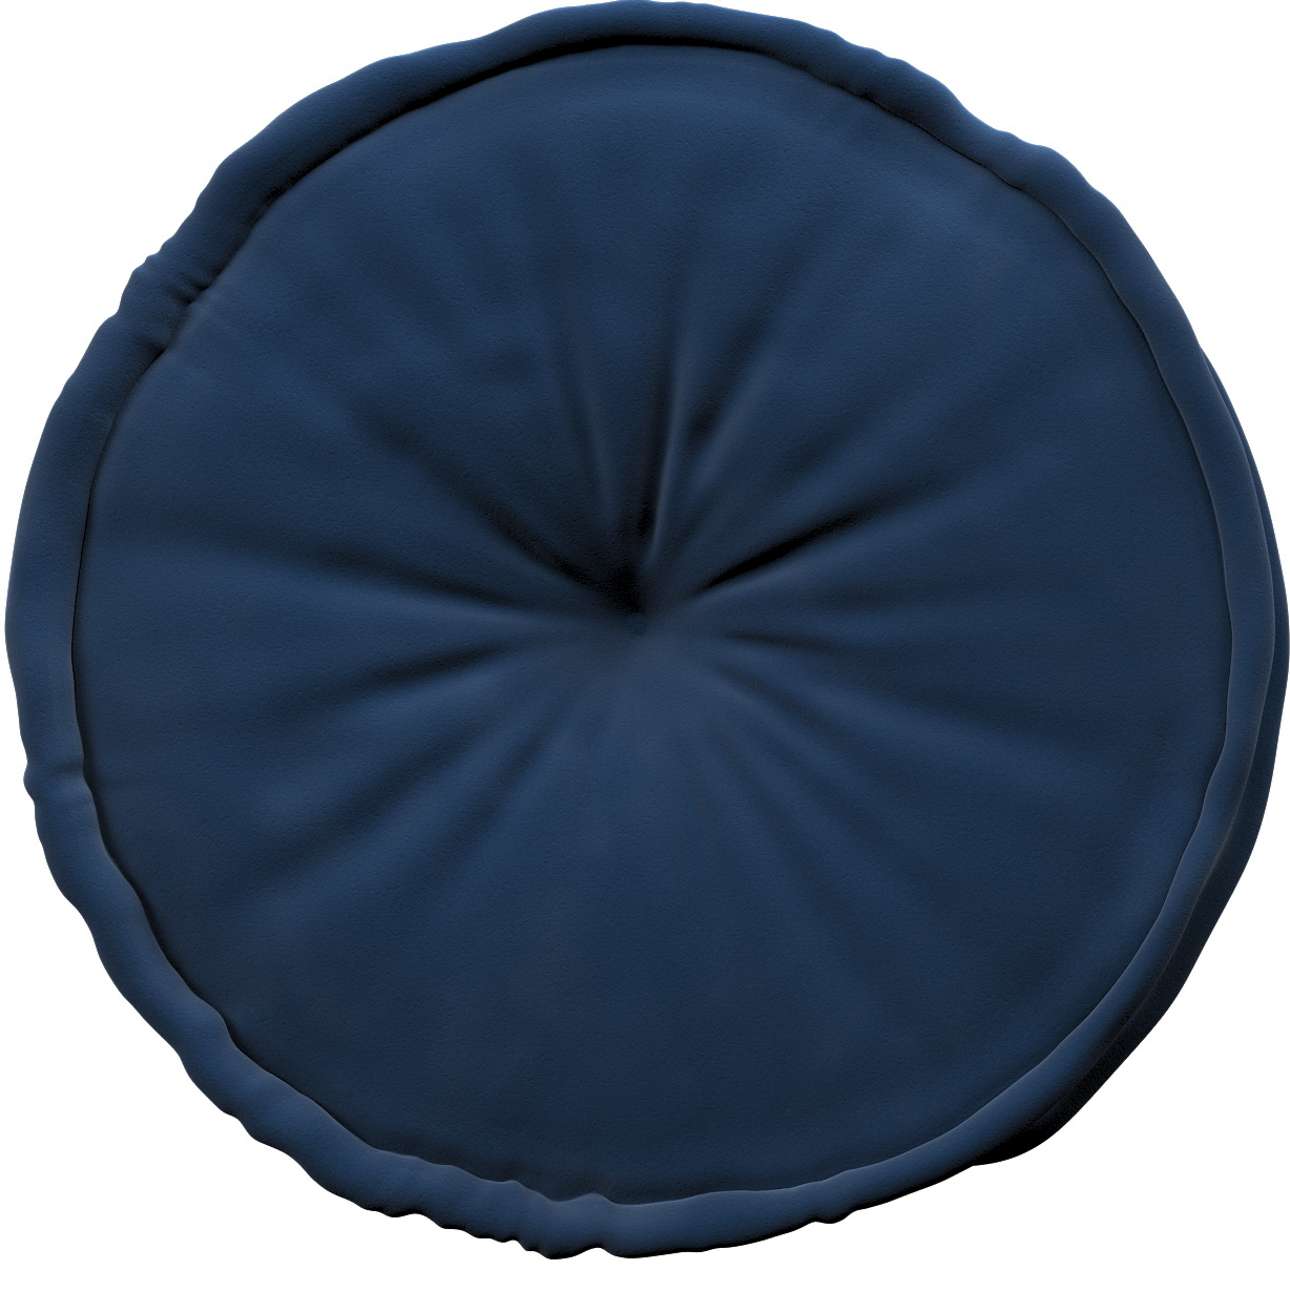 French pouf 50x13cm - Posh Velvet - navy blue